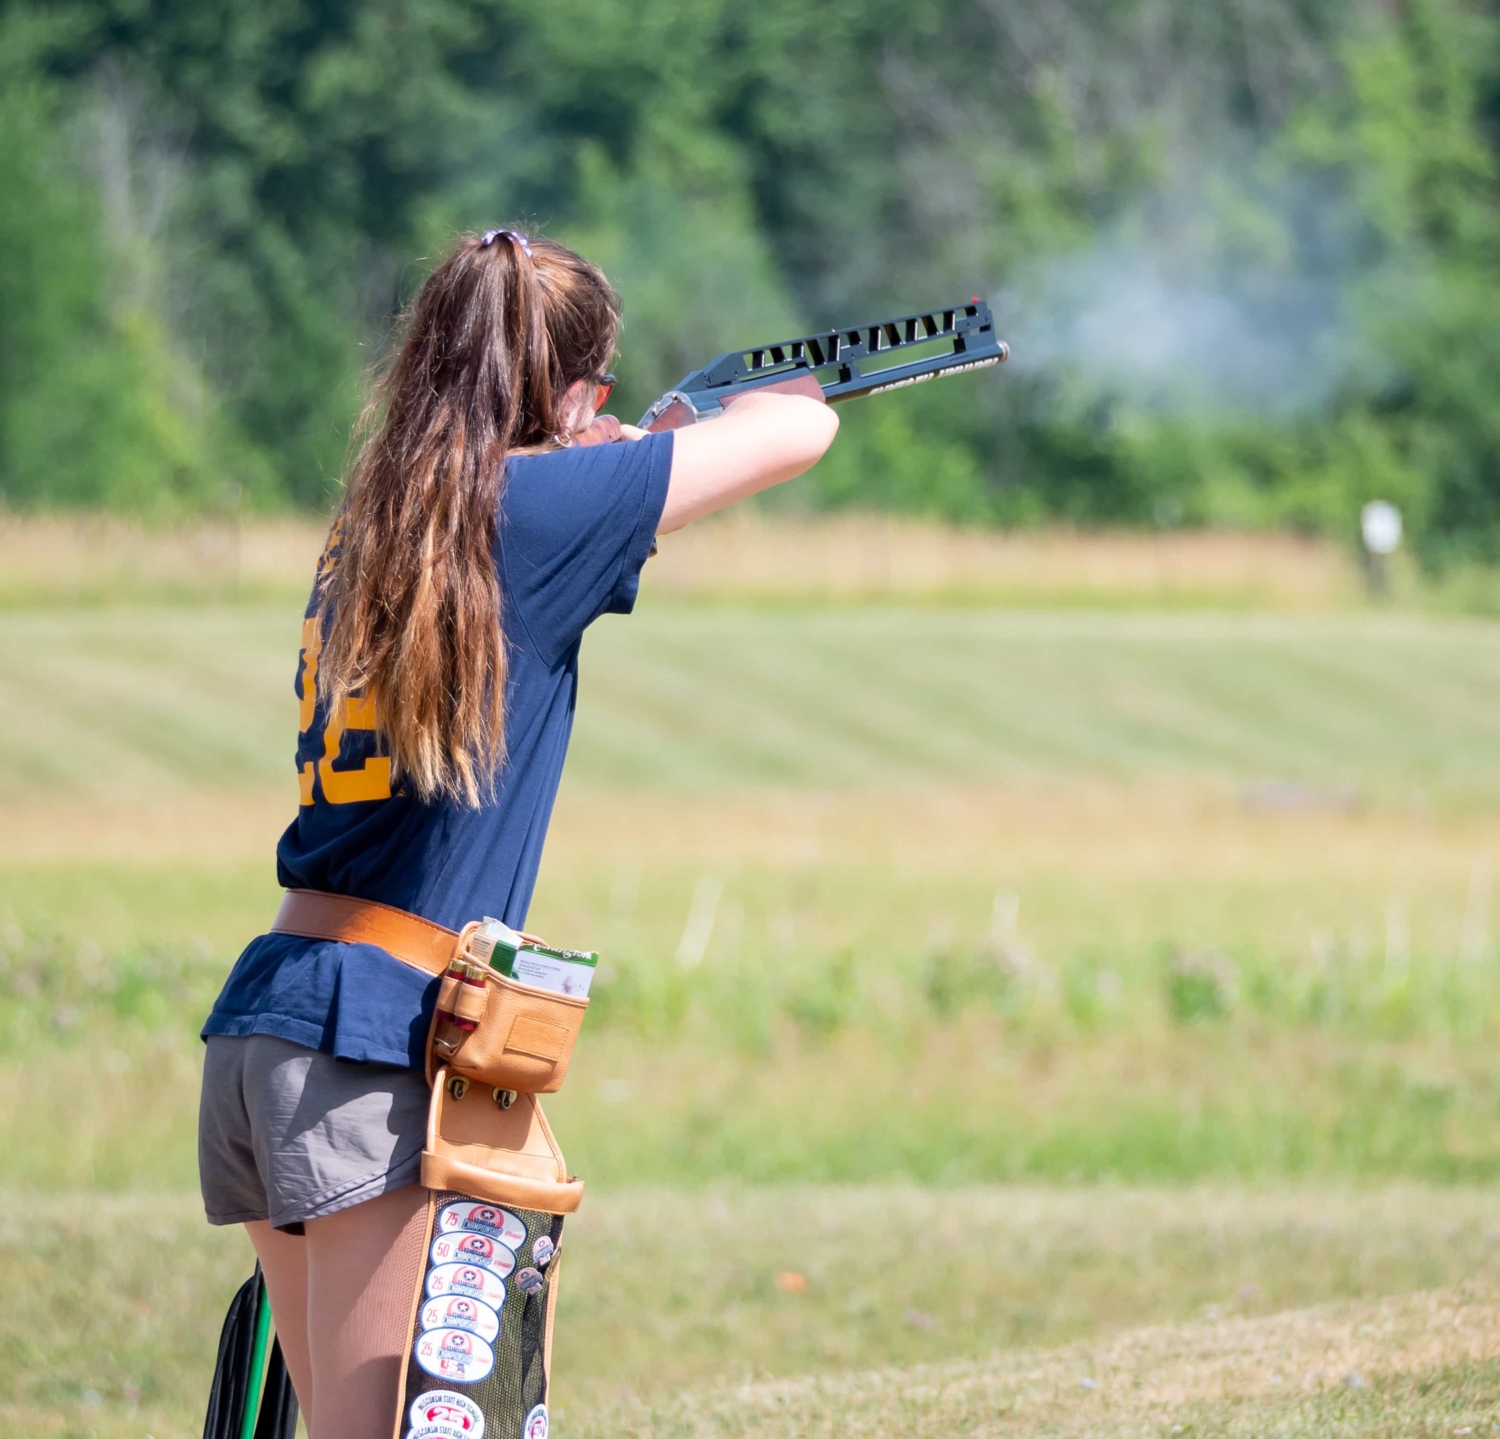 A girl shooting a gun at a range.